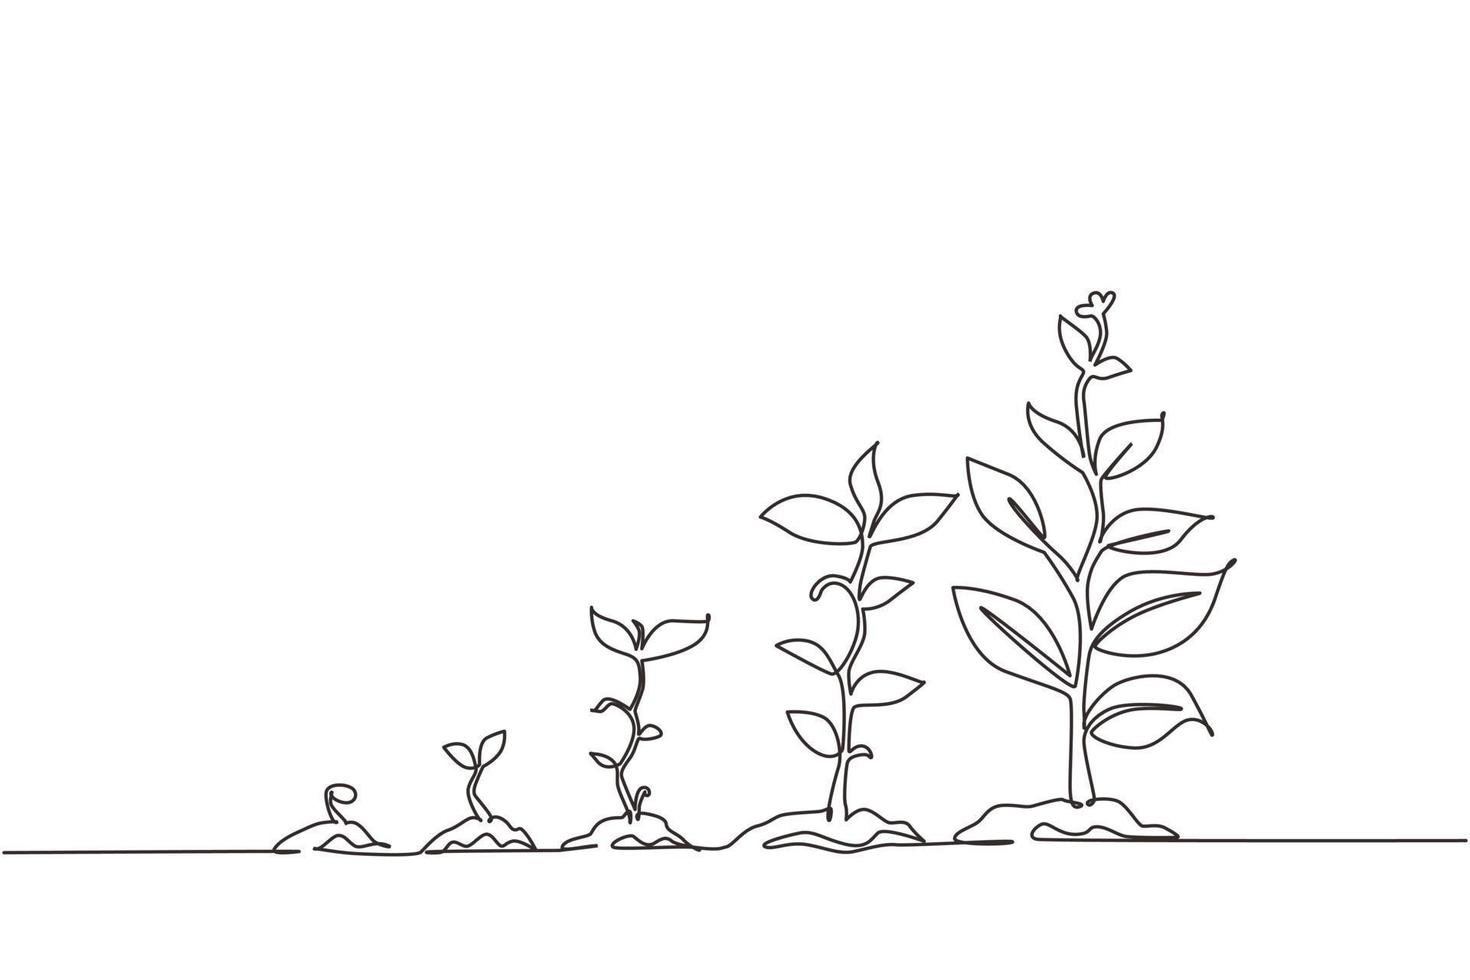 kontinuerlig en rad ritning infographic av plantering träd. frön spirar i marken. fröplanta trädgårdsväxt. groddar, växter, träd växande ikoner. enda rad rita design vektorgrafisk illustration vektor